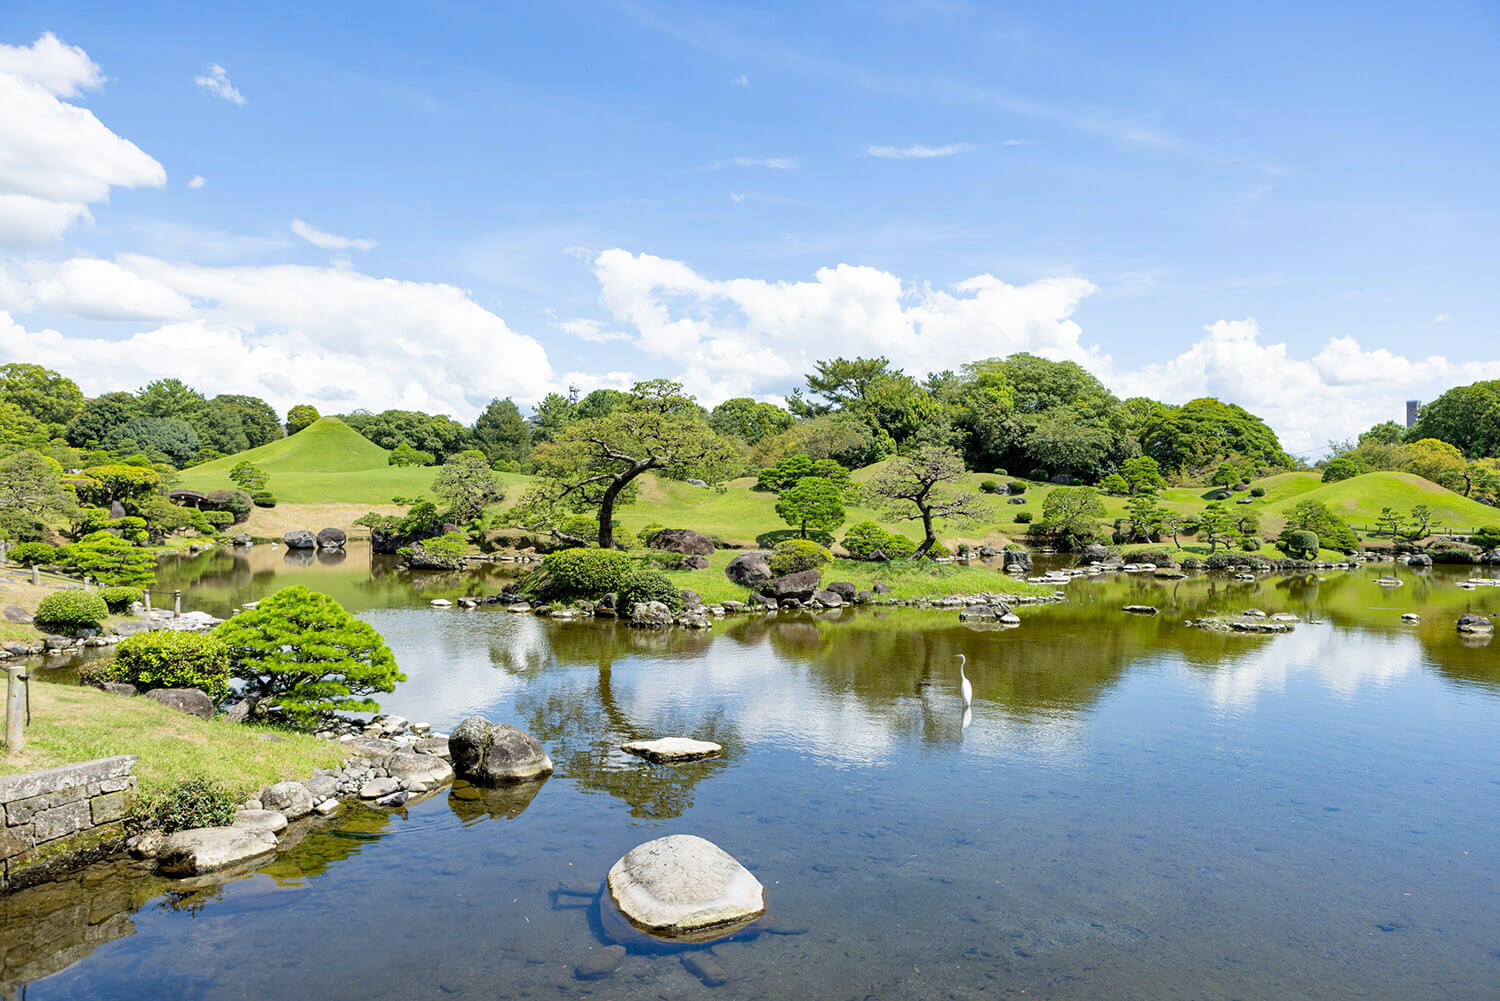 約350年前からほぼ変わらない姿の「水前寺成趣園」。天気の良い日には庭園の池が水鏡に